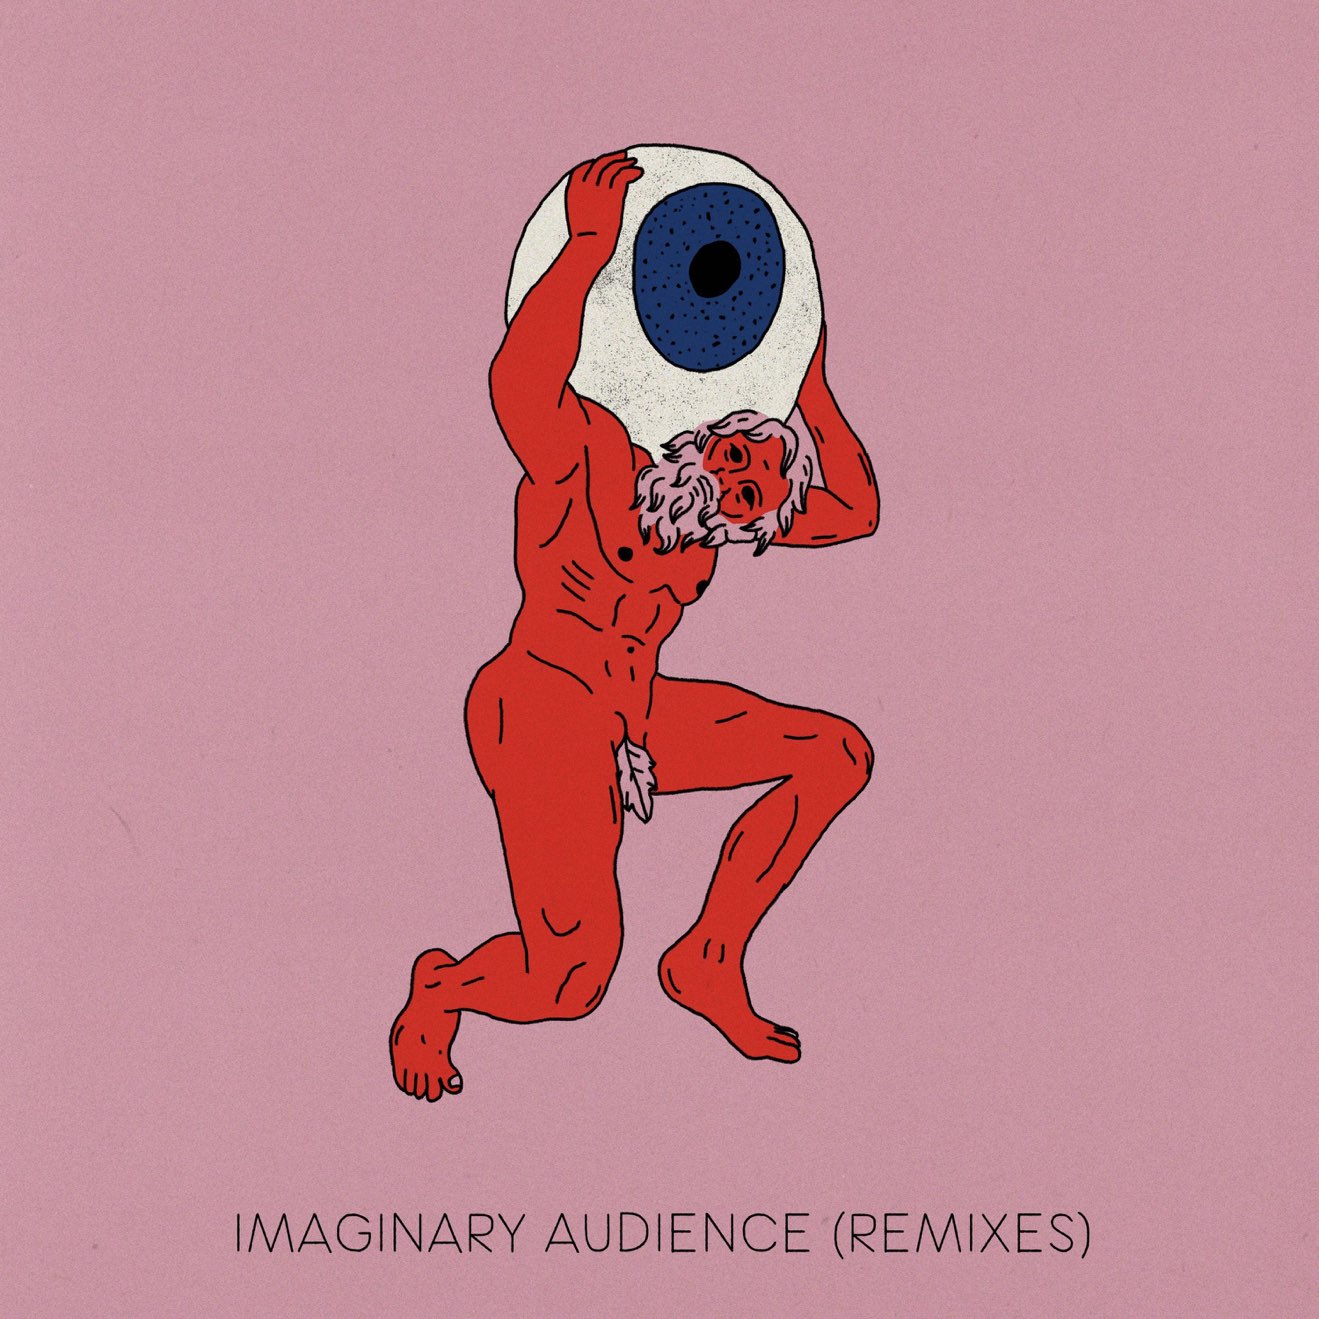 Mindchatter, David Dann & Robot Koch – Imaginary Audience (Remixes) (2021) [iTunes Match M4A]